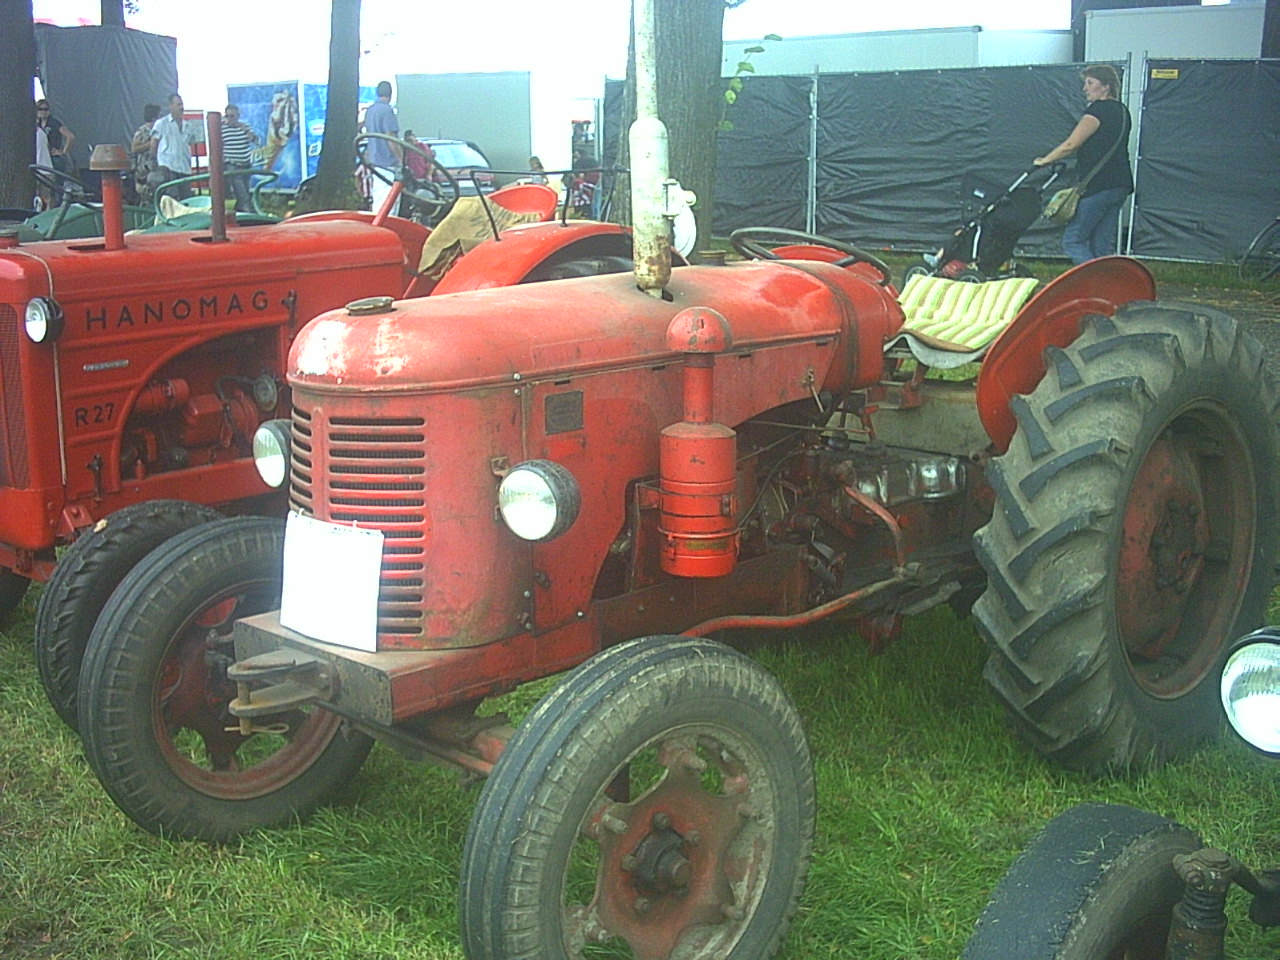 oudijzer | een site voor iedereen die van oude tractoren houd!